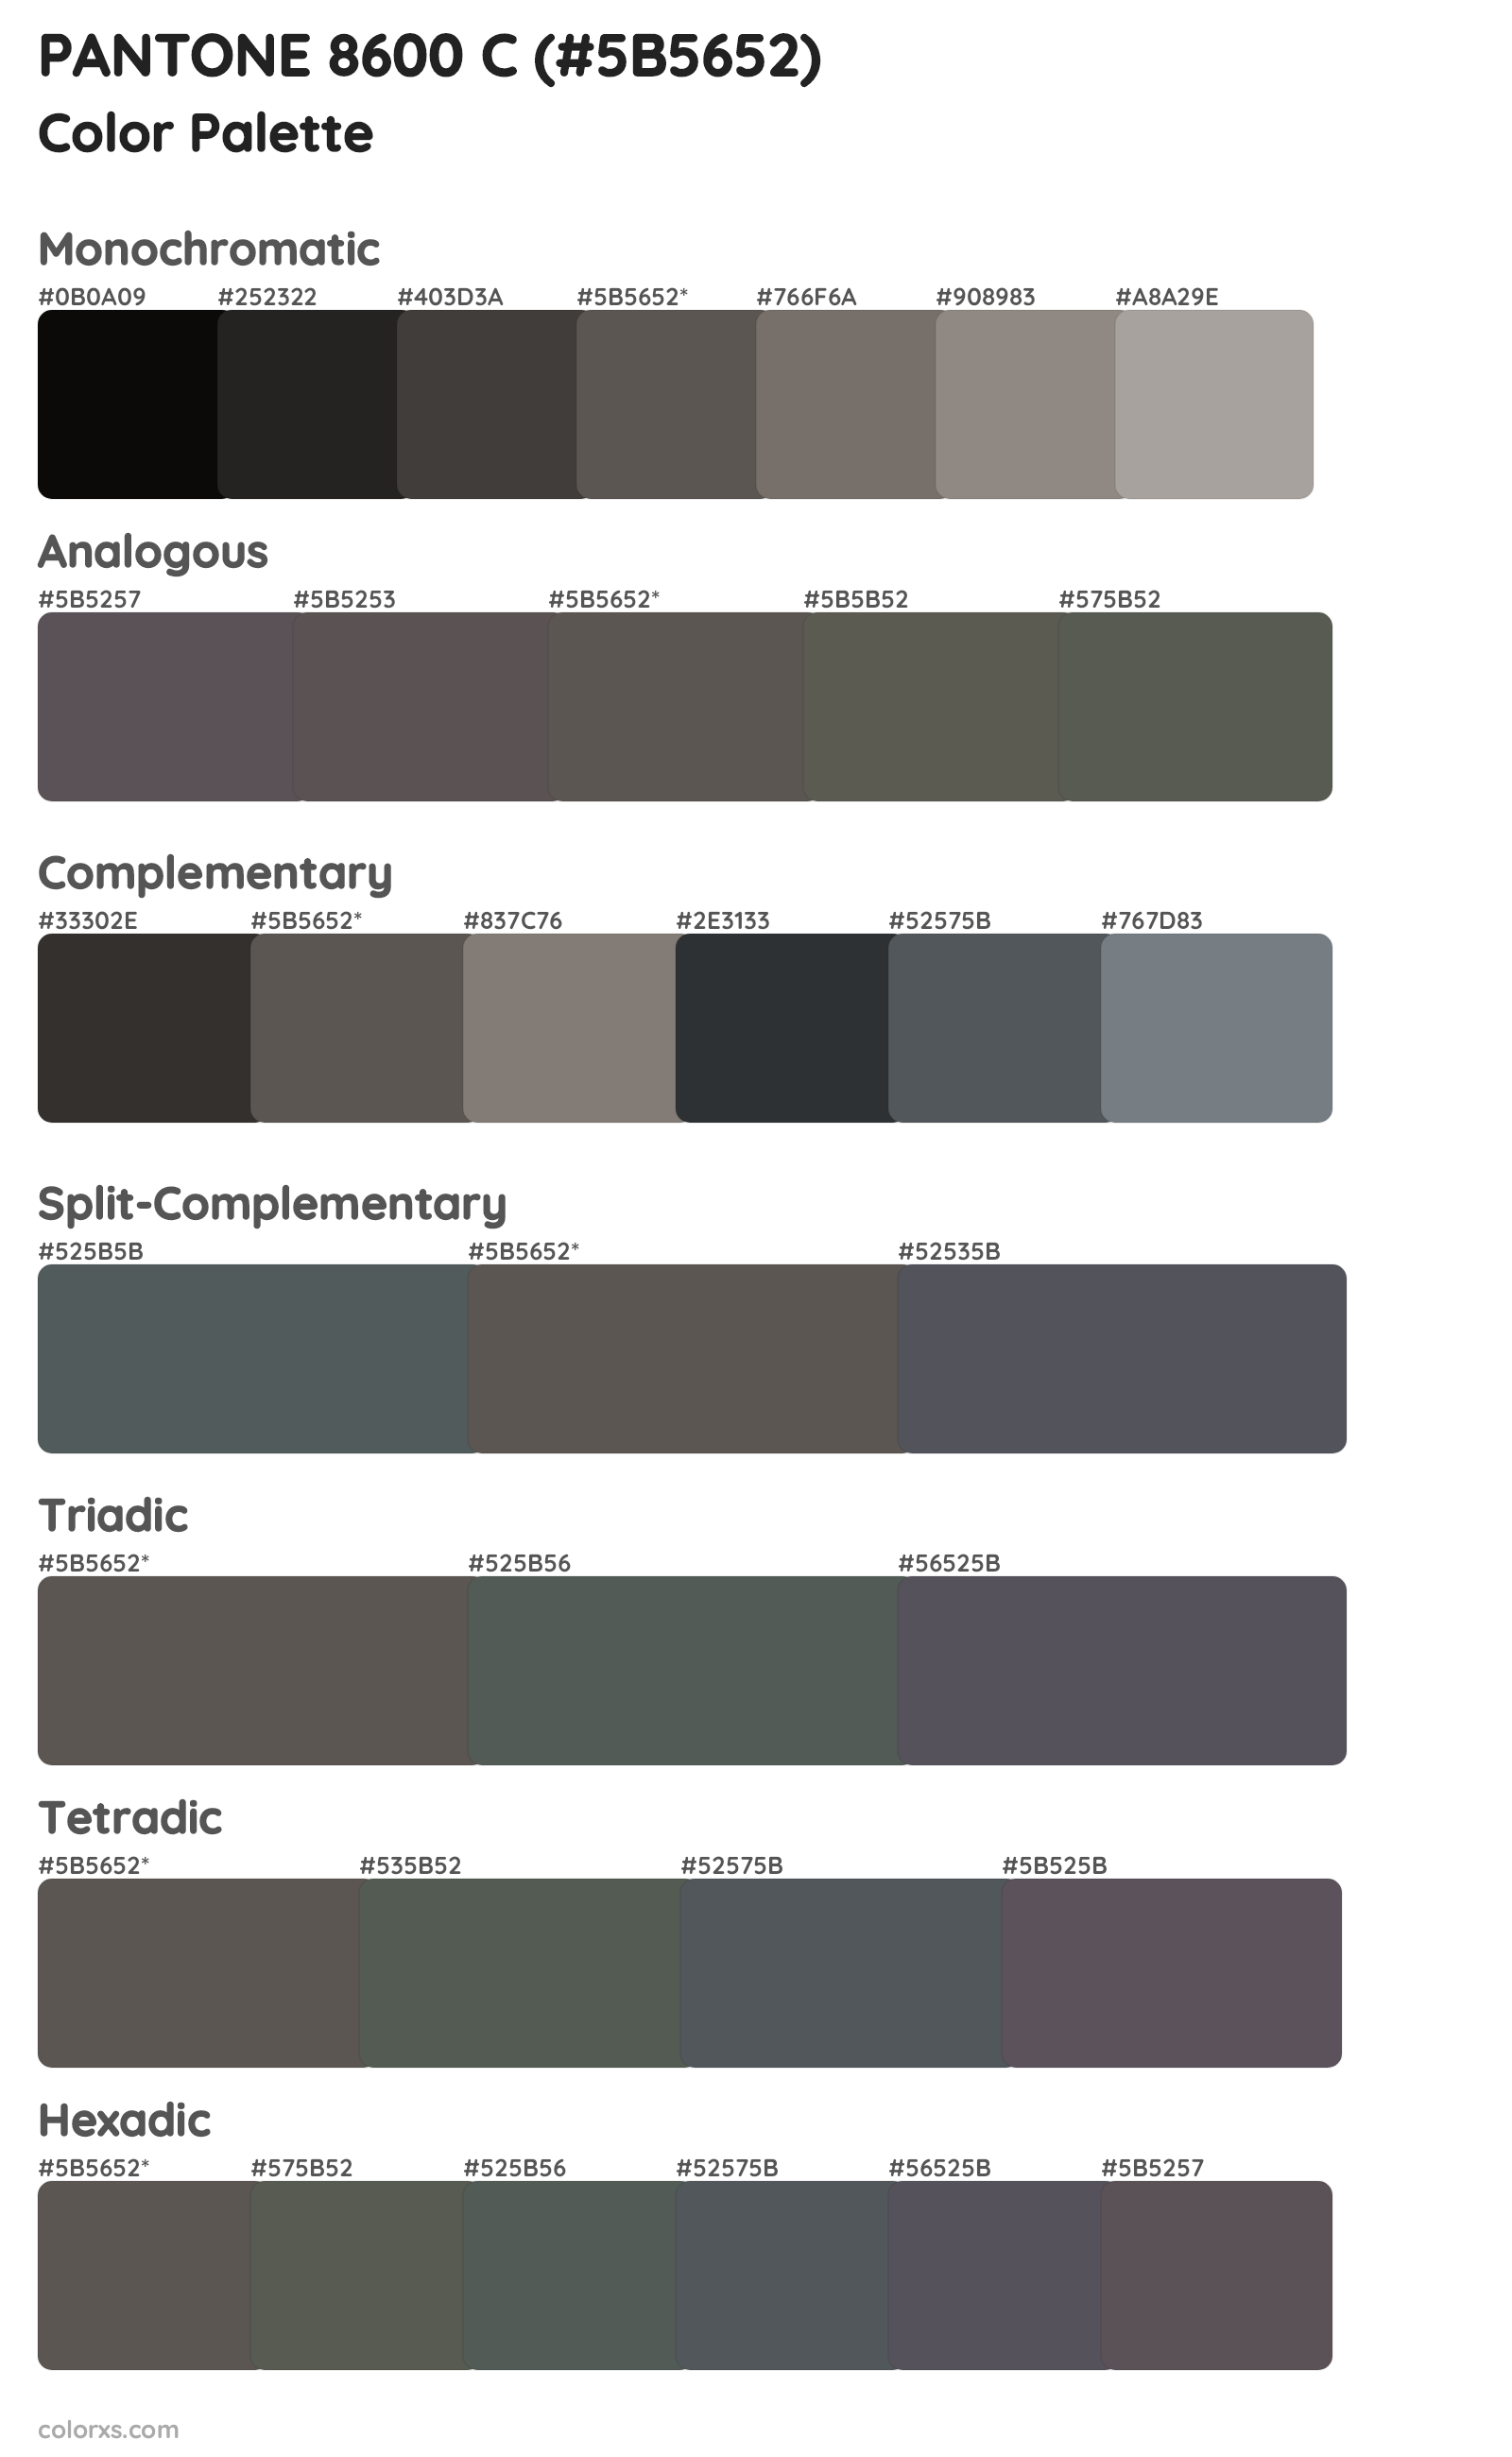 PANTONE 8600 C Color Scheme Palettes